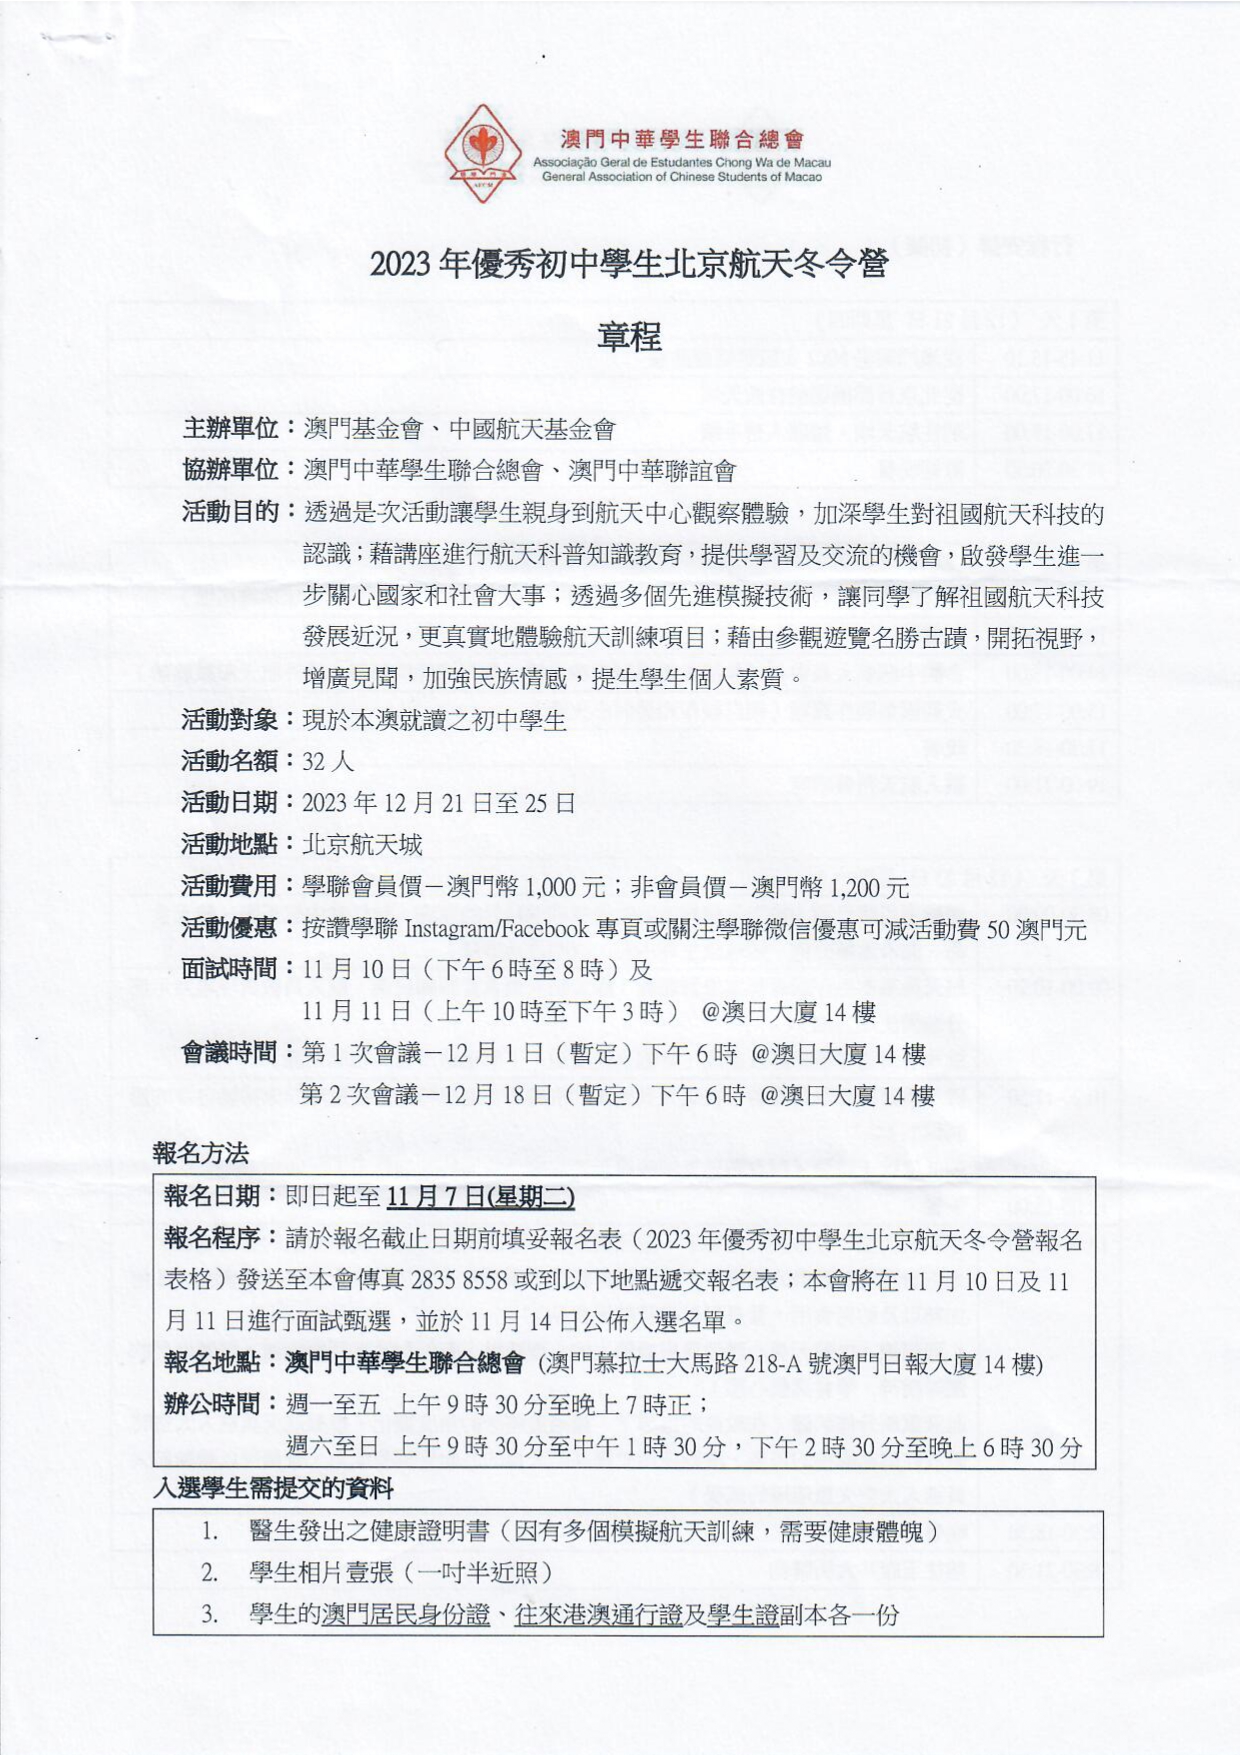 2023年優秀初中學生北京航天冬令營 章程1.jpg